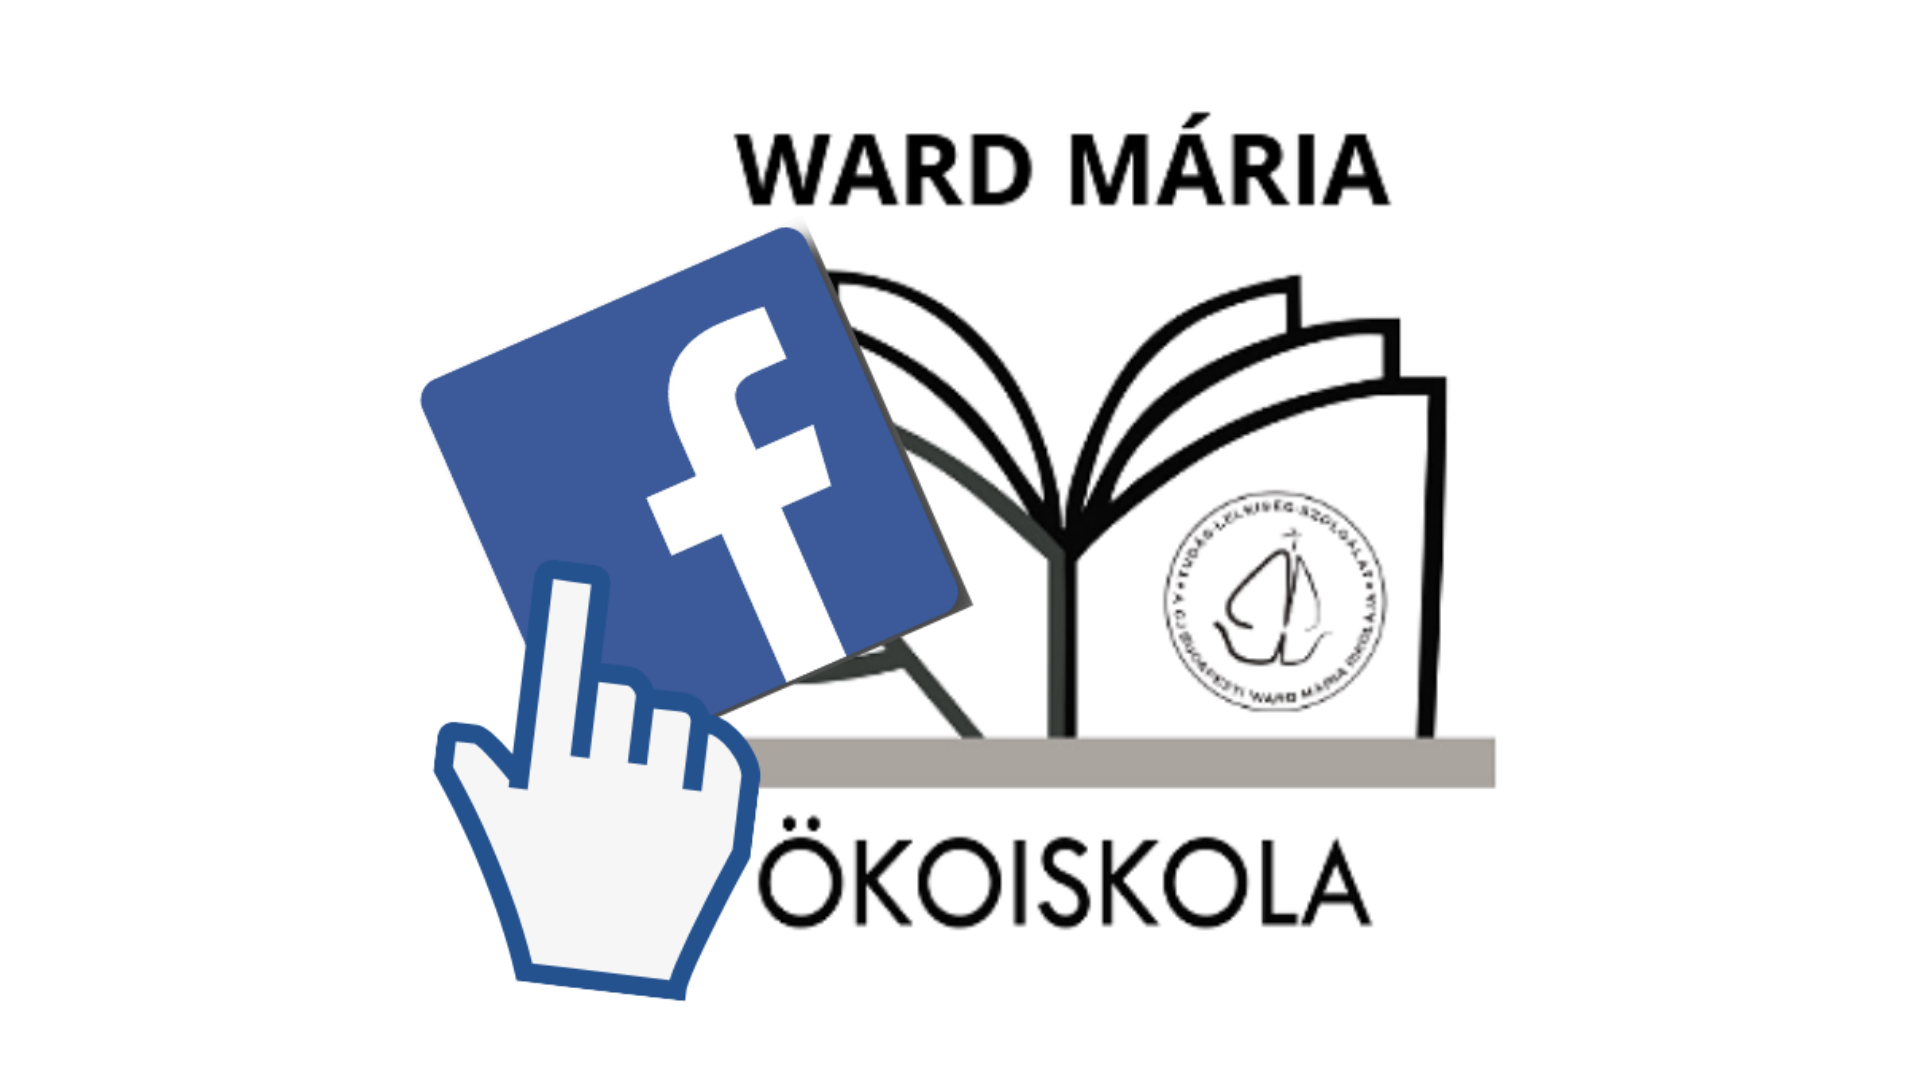 Ward Mária Ökoiskola